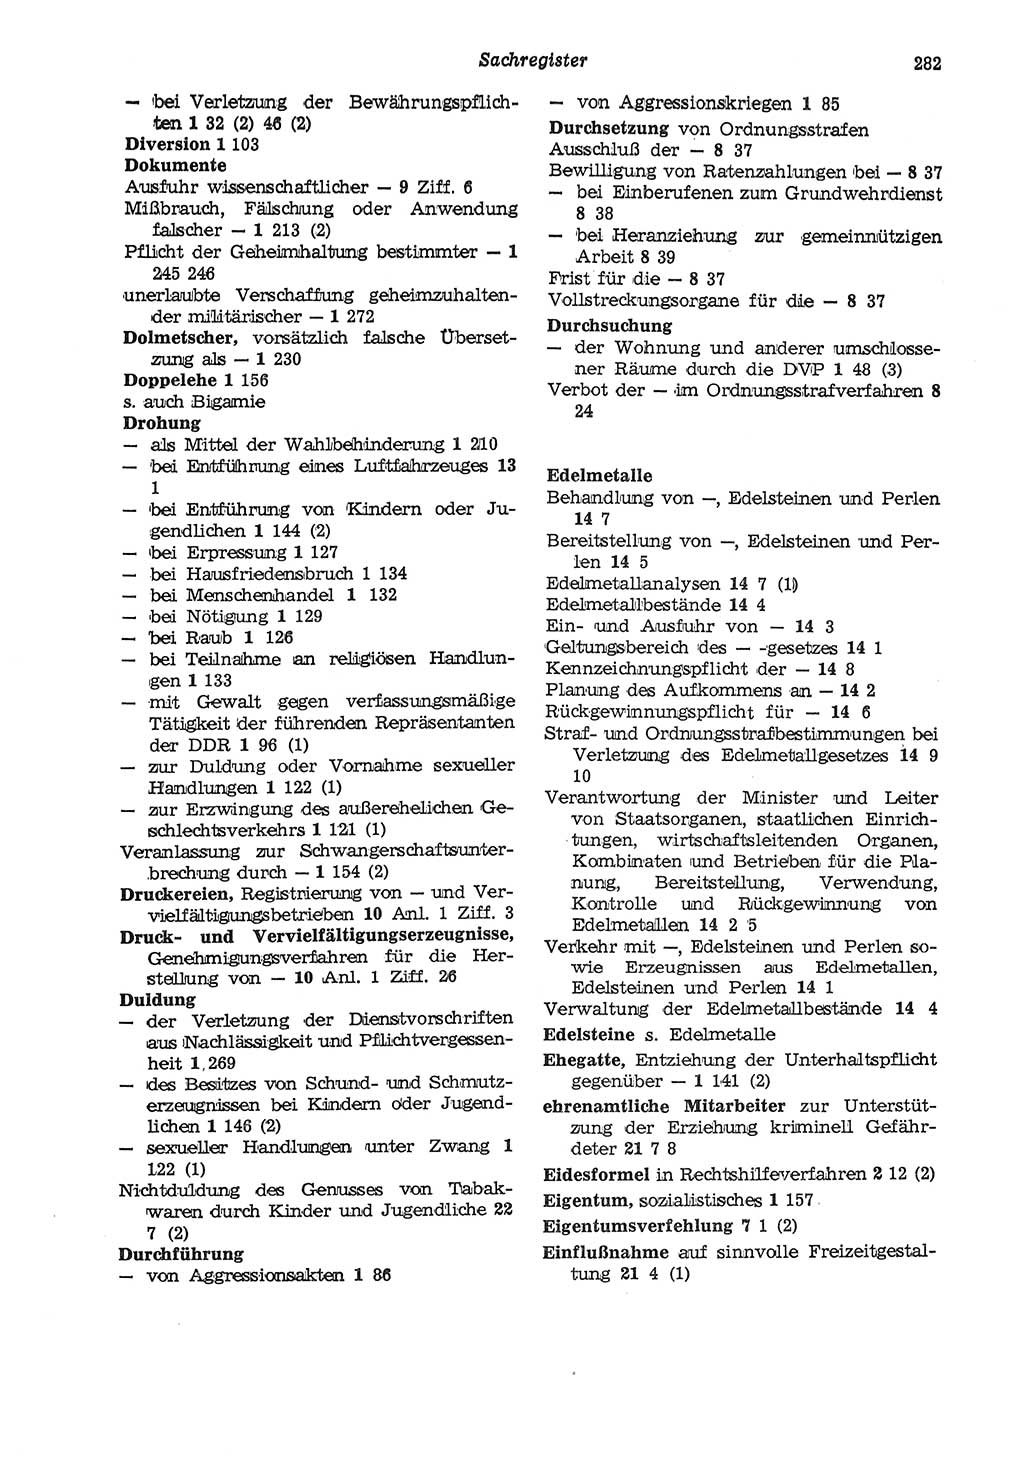 Strafgesetzbuch (StGB) der Deutschen Demokratischen Republik (DDR) und angrenzende Gesetze und Bestimmungen 1975, Seite 282 (StGB DDR Ges. Best. 1975, S. 282)